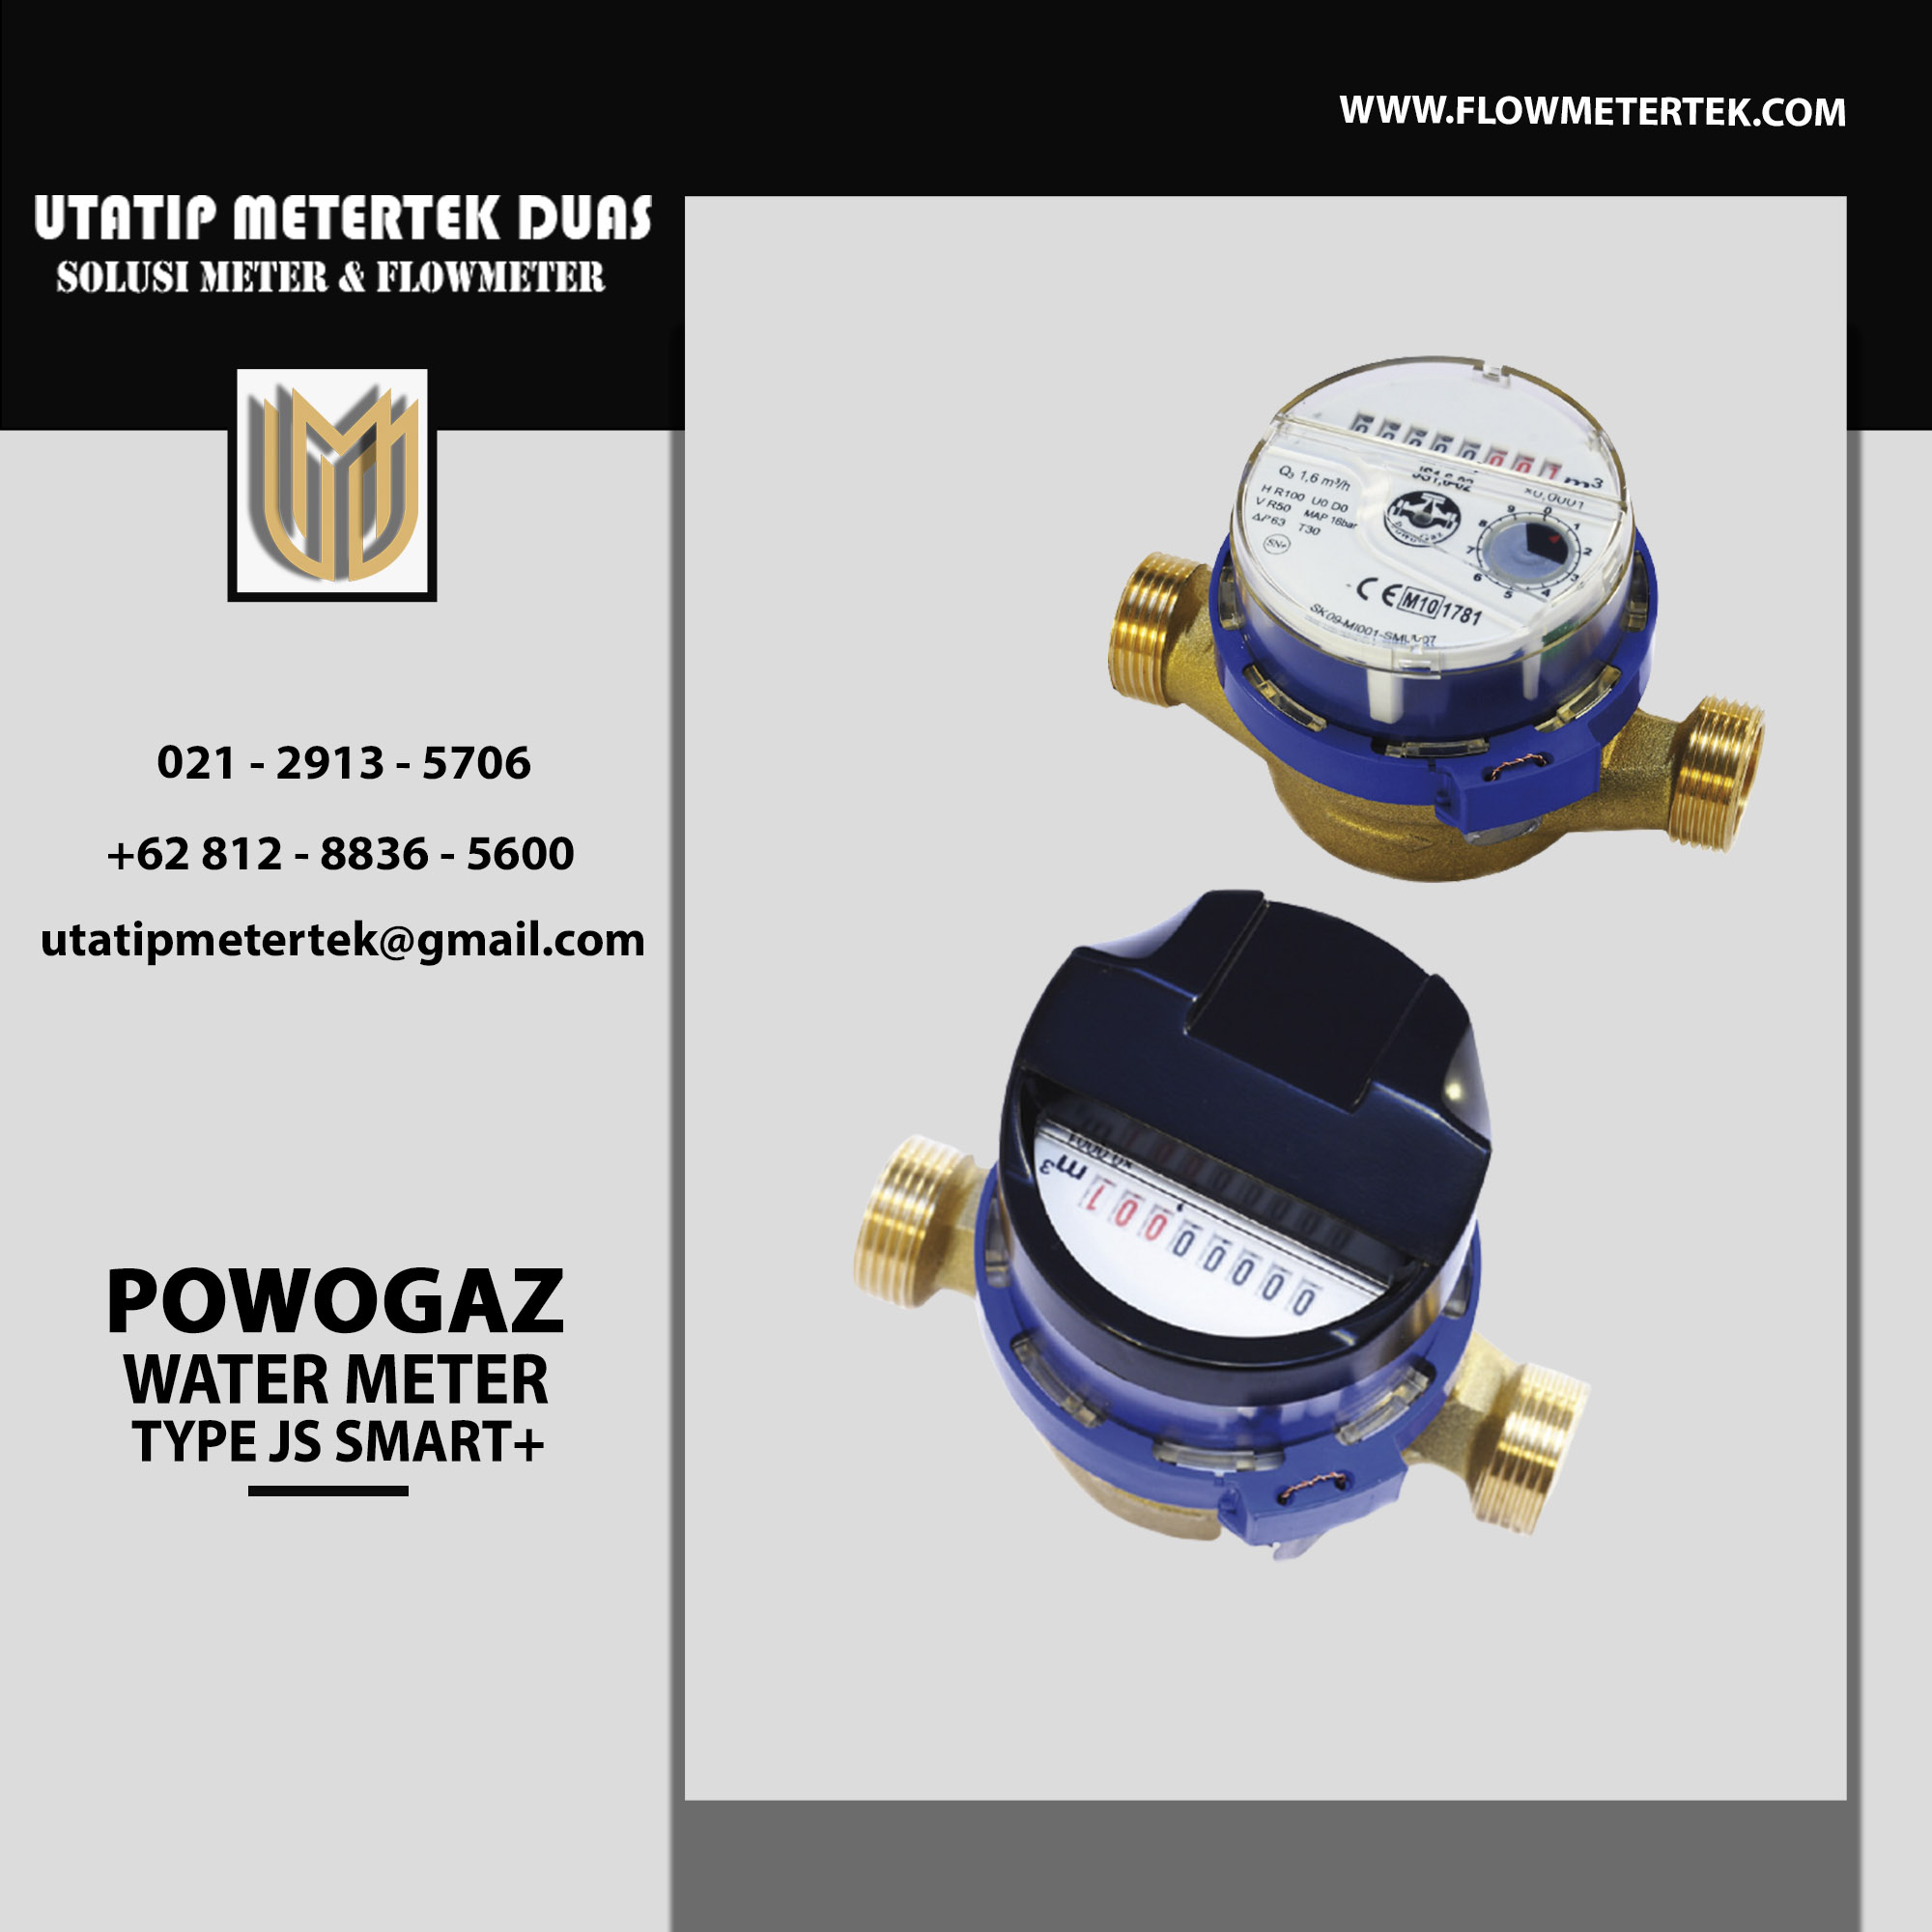 Powogaz Water Meter TYPE JS Smart+